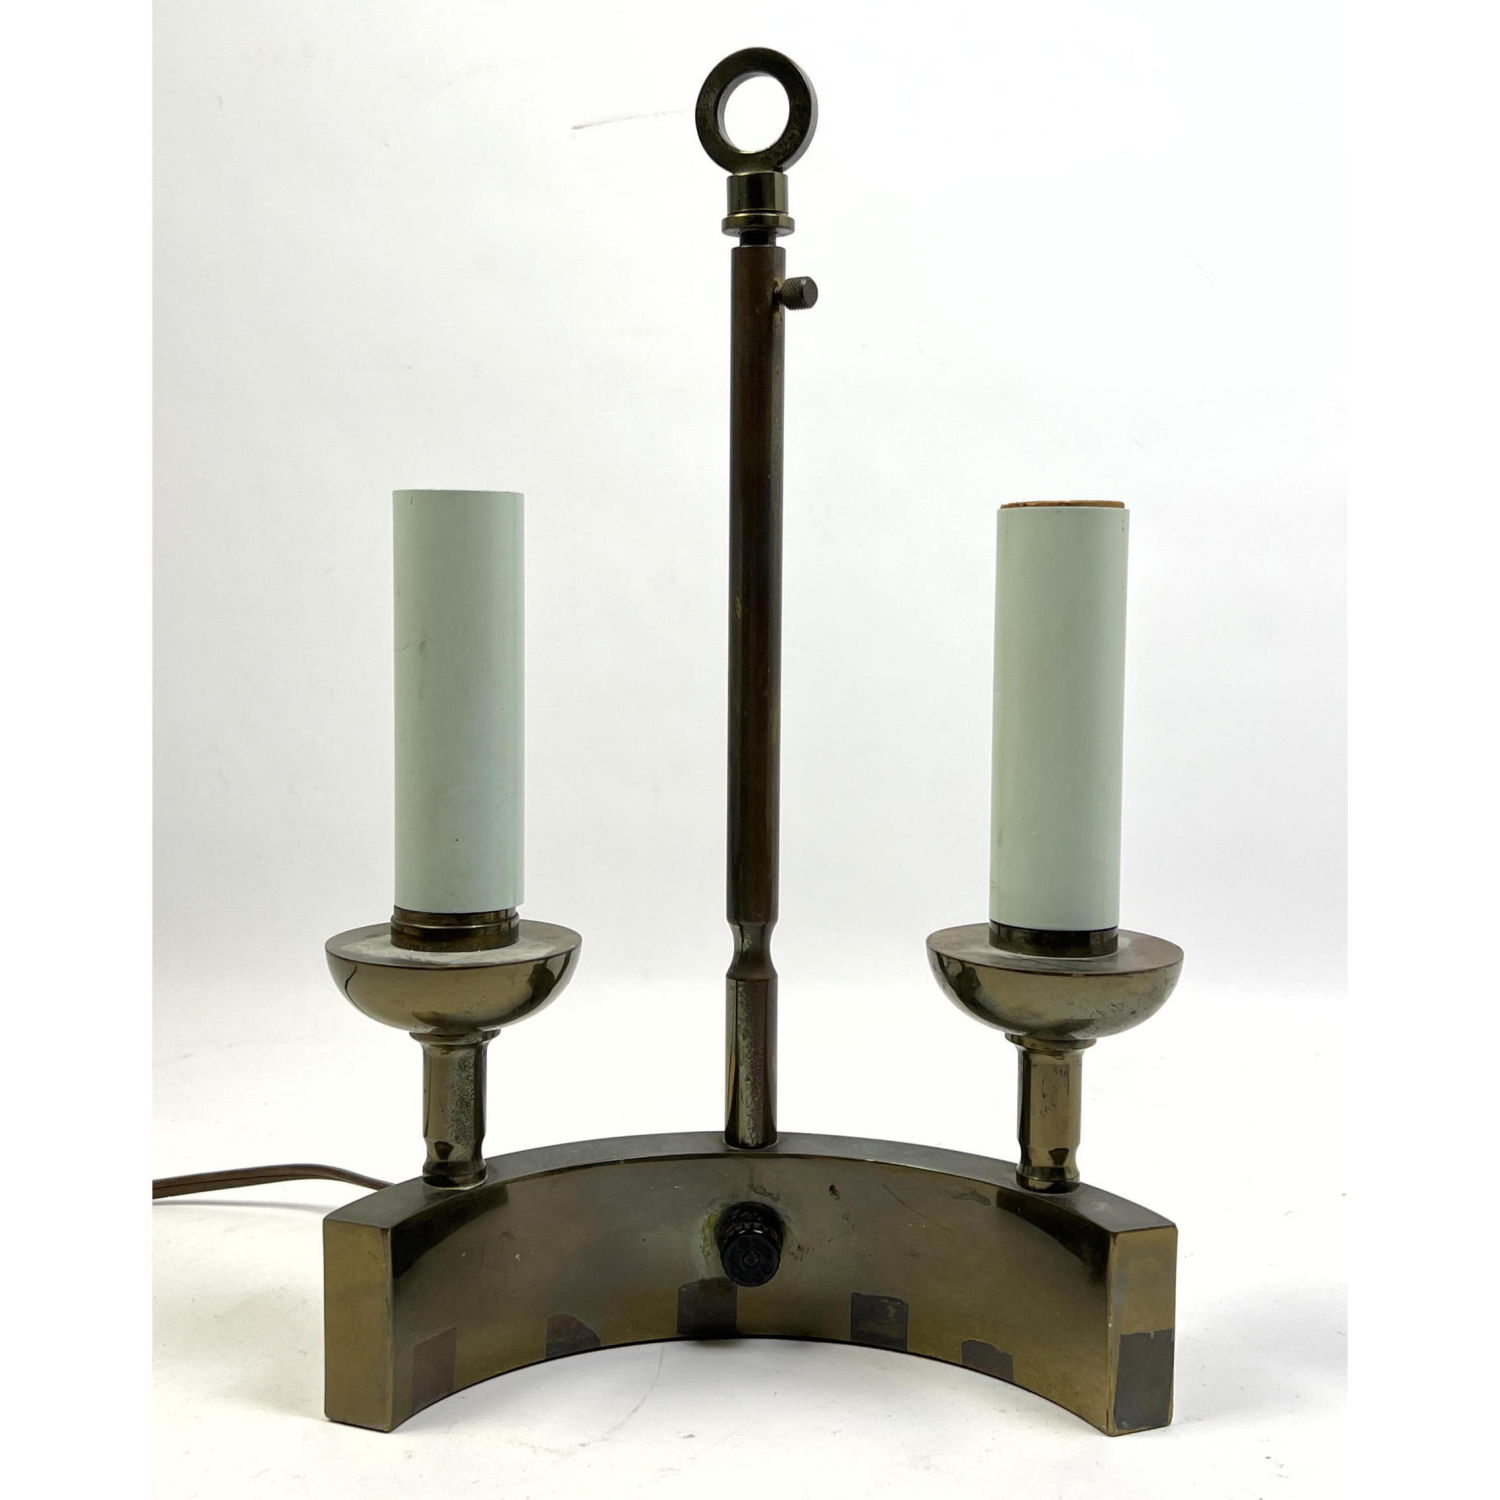 Parzinger Style Arc Table Lamp  2b9d8d